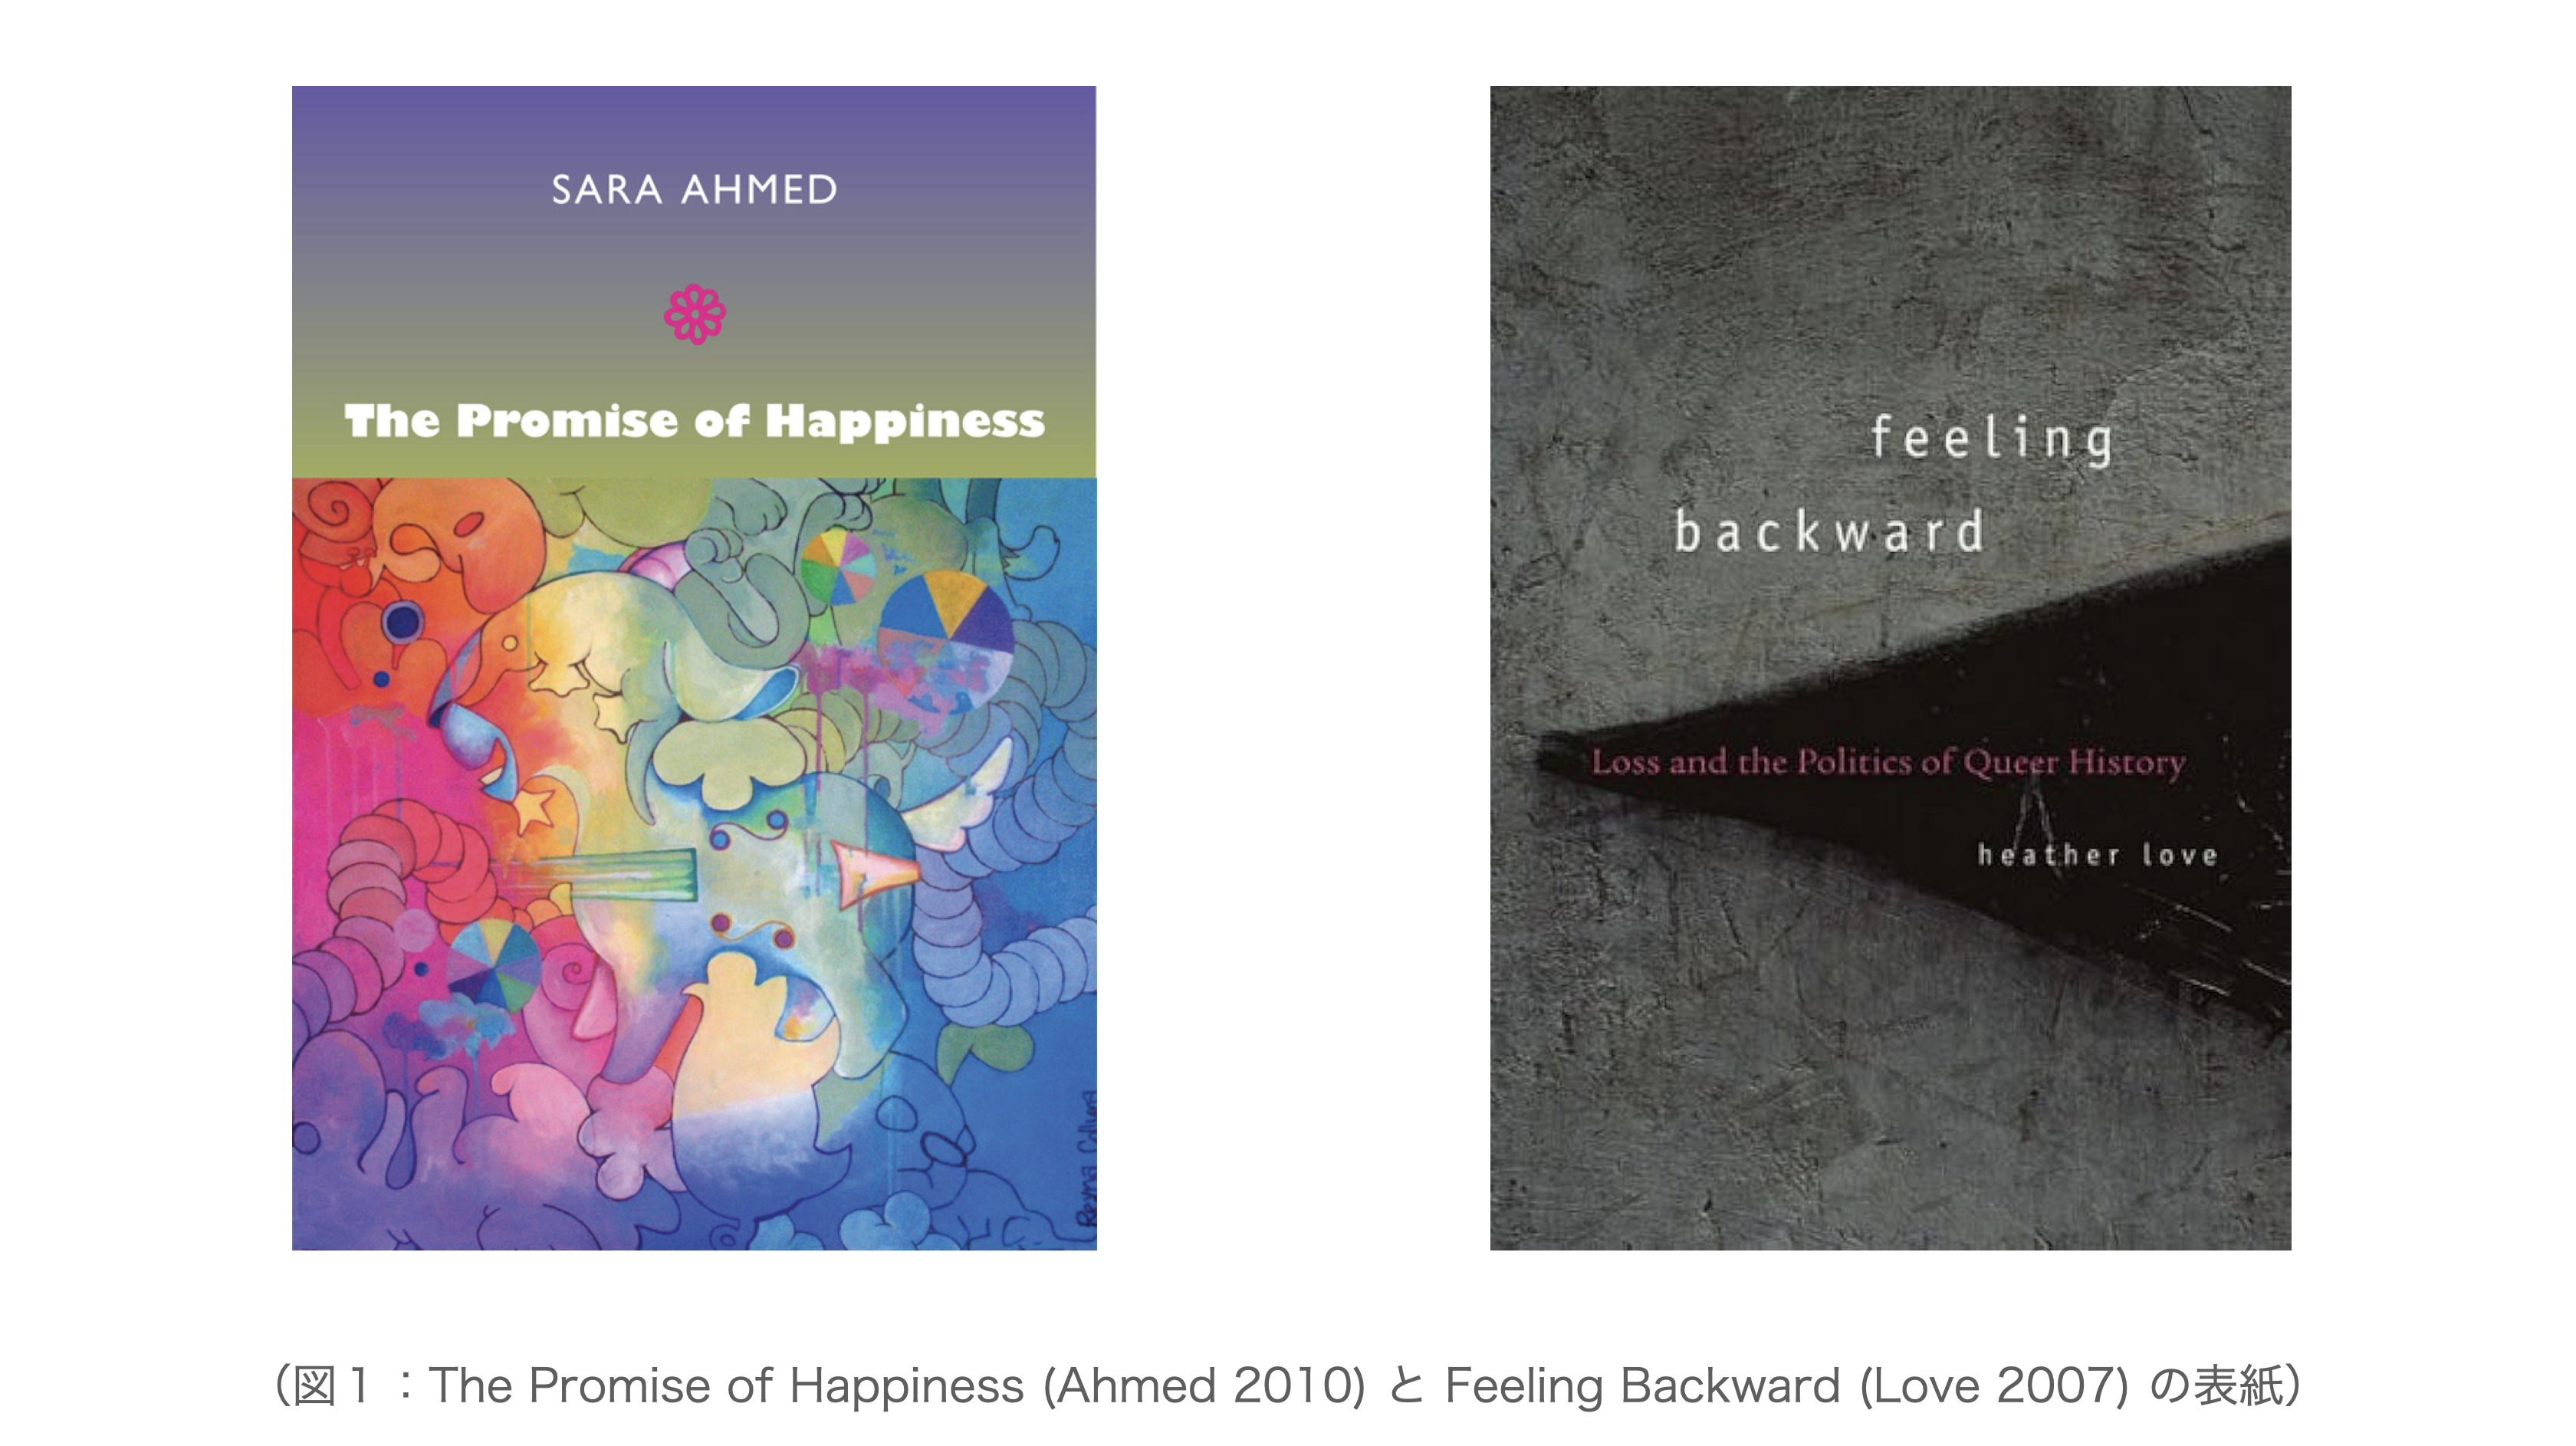 図１：The Promise of Happiness (Ahmed 2010) と Feeling Backward (Love 2007) の表紙